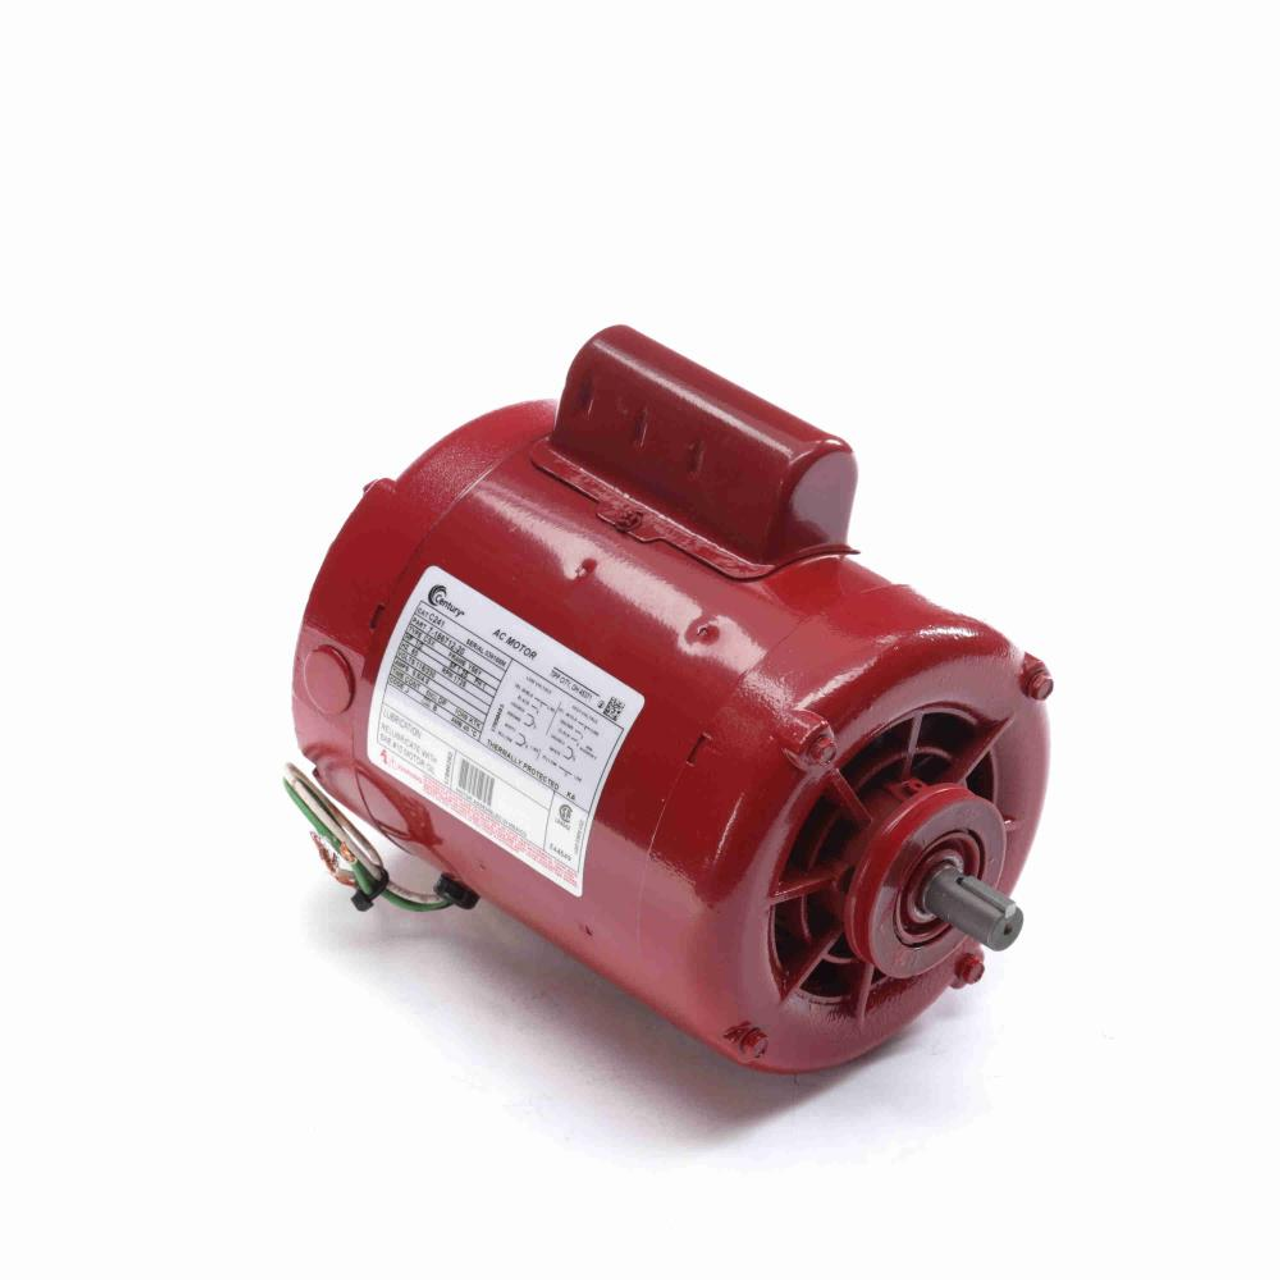 C241 Hot Water Circulator Pump Motor 1/2 HP